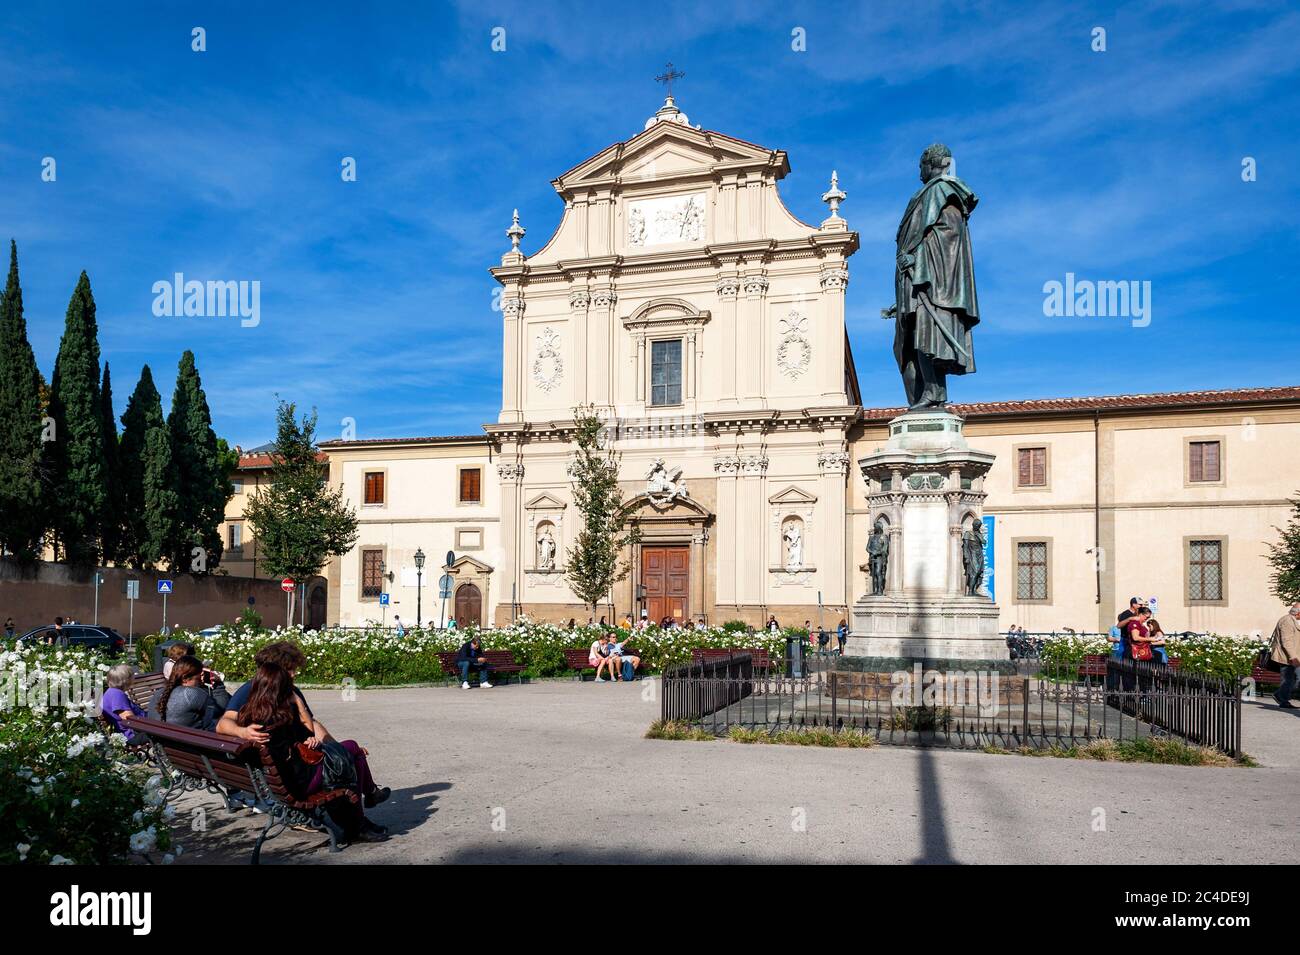 Denkmal für General Manfredo Fanti, Anführer der Kämpfe um die Unabhängigkeit Italiens, vor der Kirche San Marco auf dem Markusplatz in Florenz, Italien Stockfoto